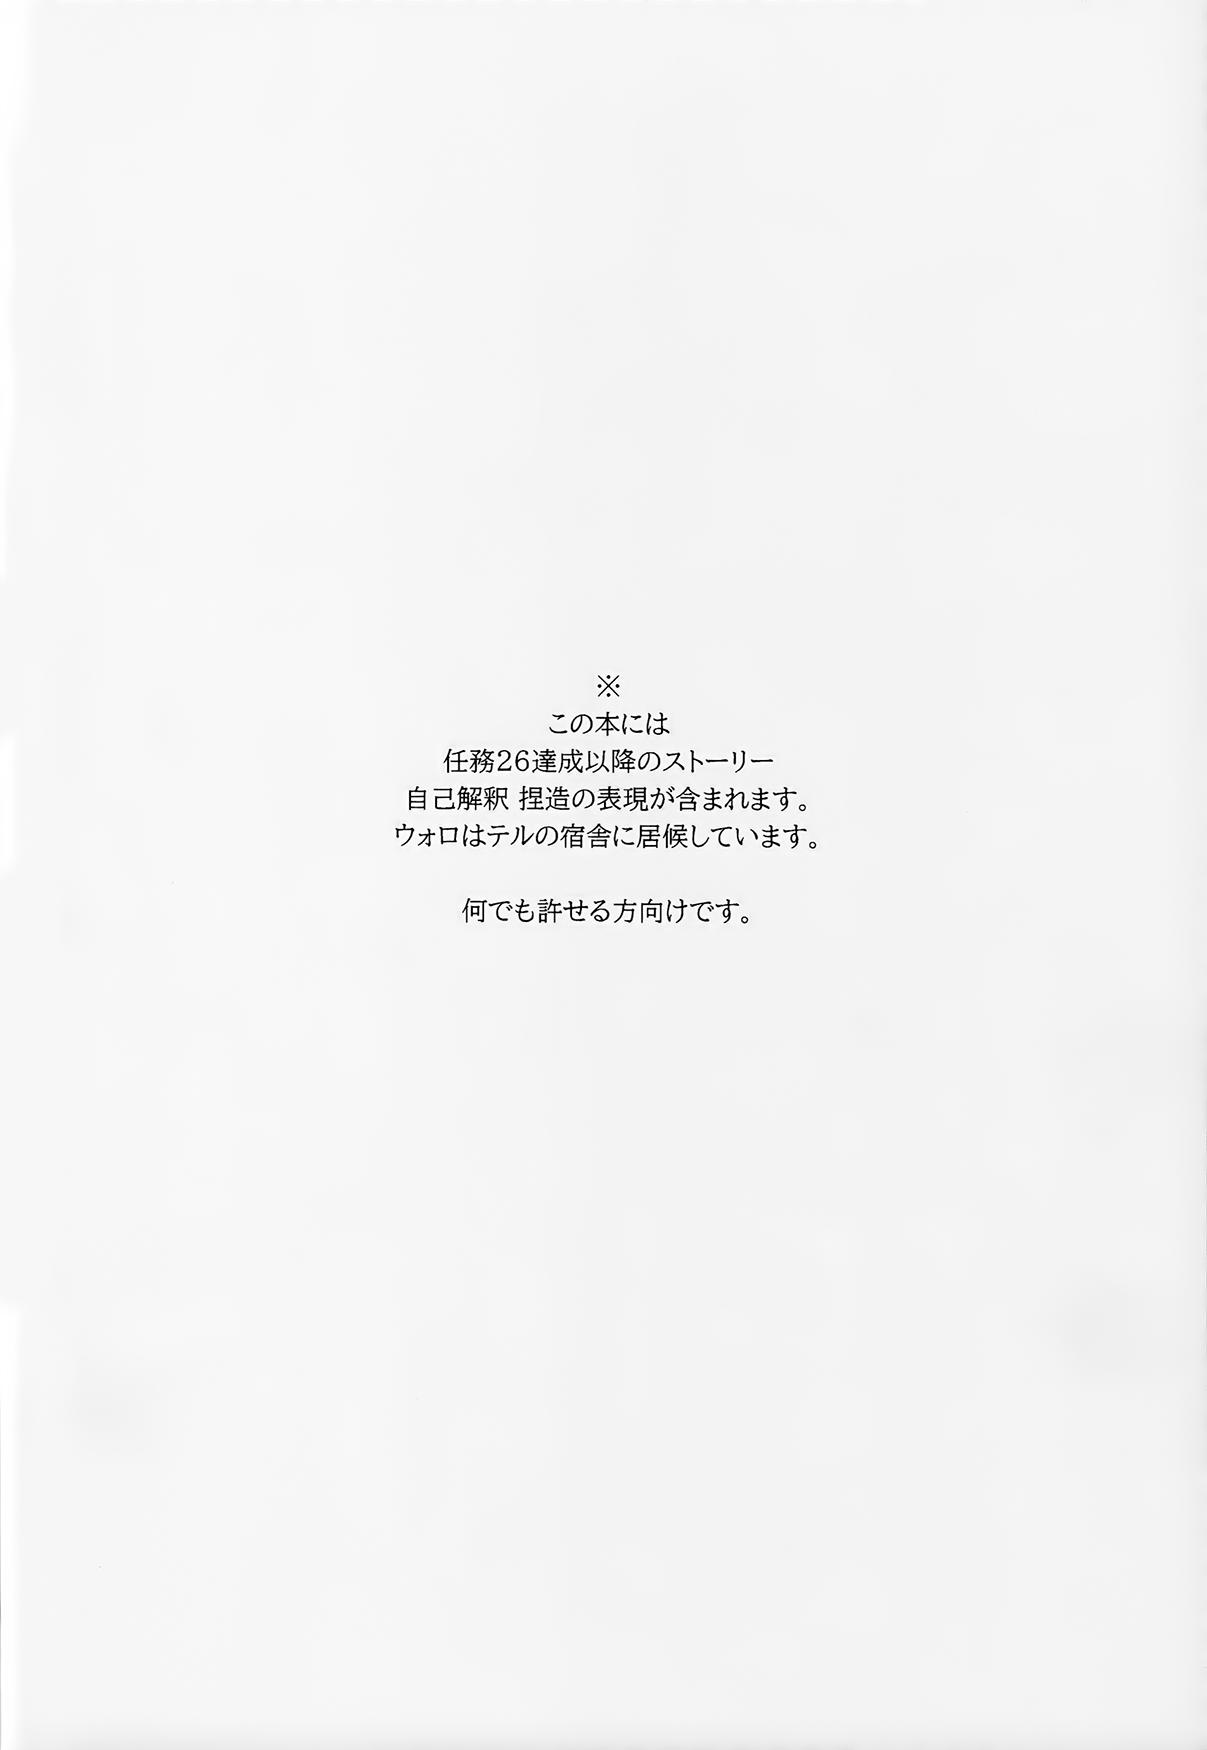 Cuzinho Yoiko Waruiko SUNAOnako. - Pokemon | pocket monsters 3way - Page 3